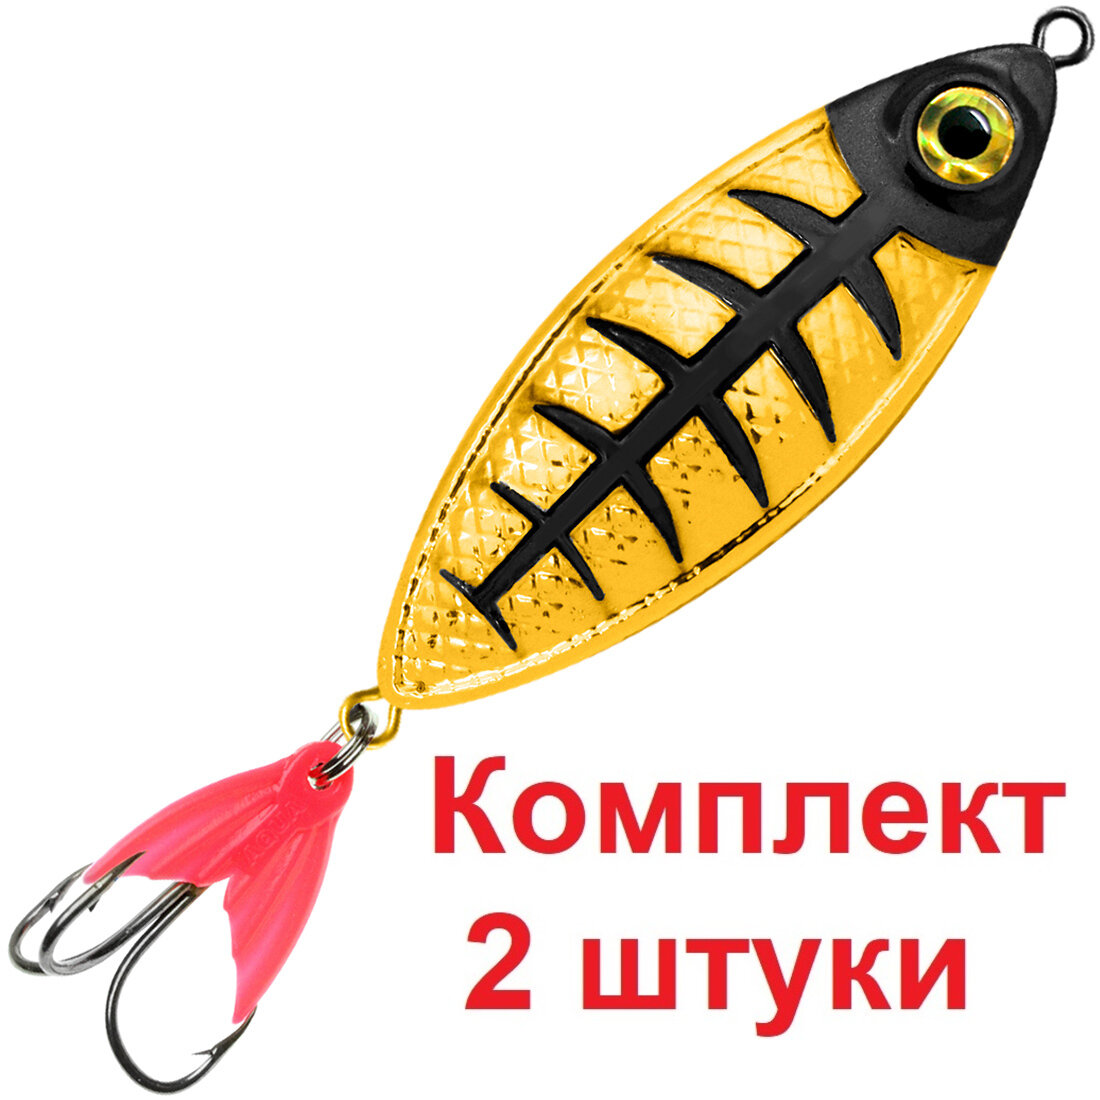 Блесна для рыбалки AQUA крок 09,0g цвет 02 (золото, серебро, черный металлик), 2 штуки в комплекте